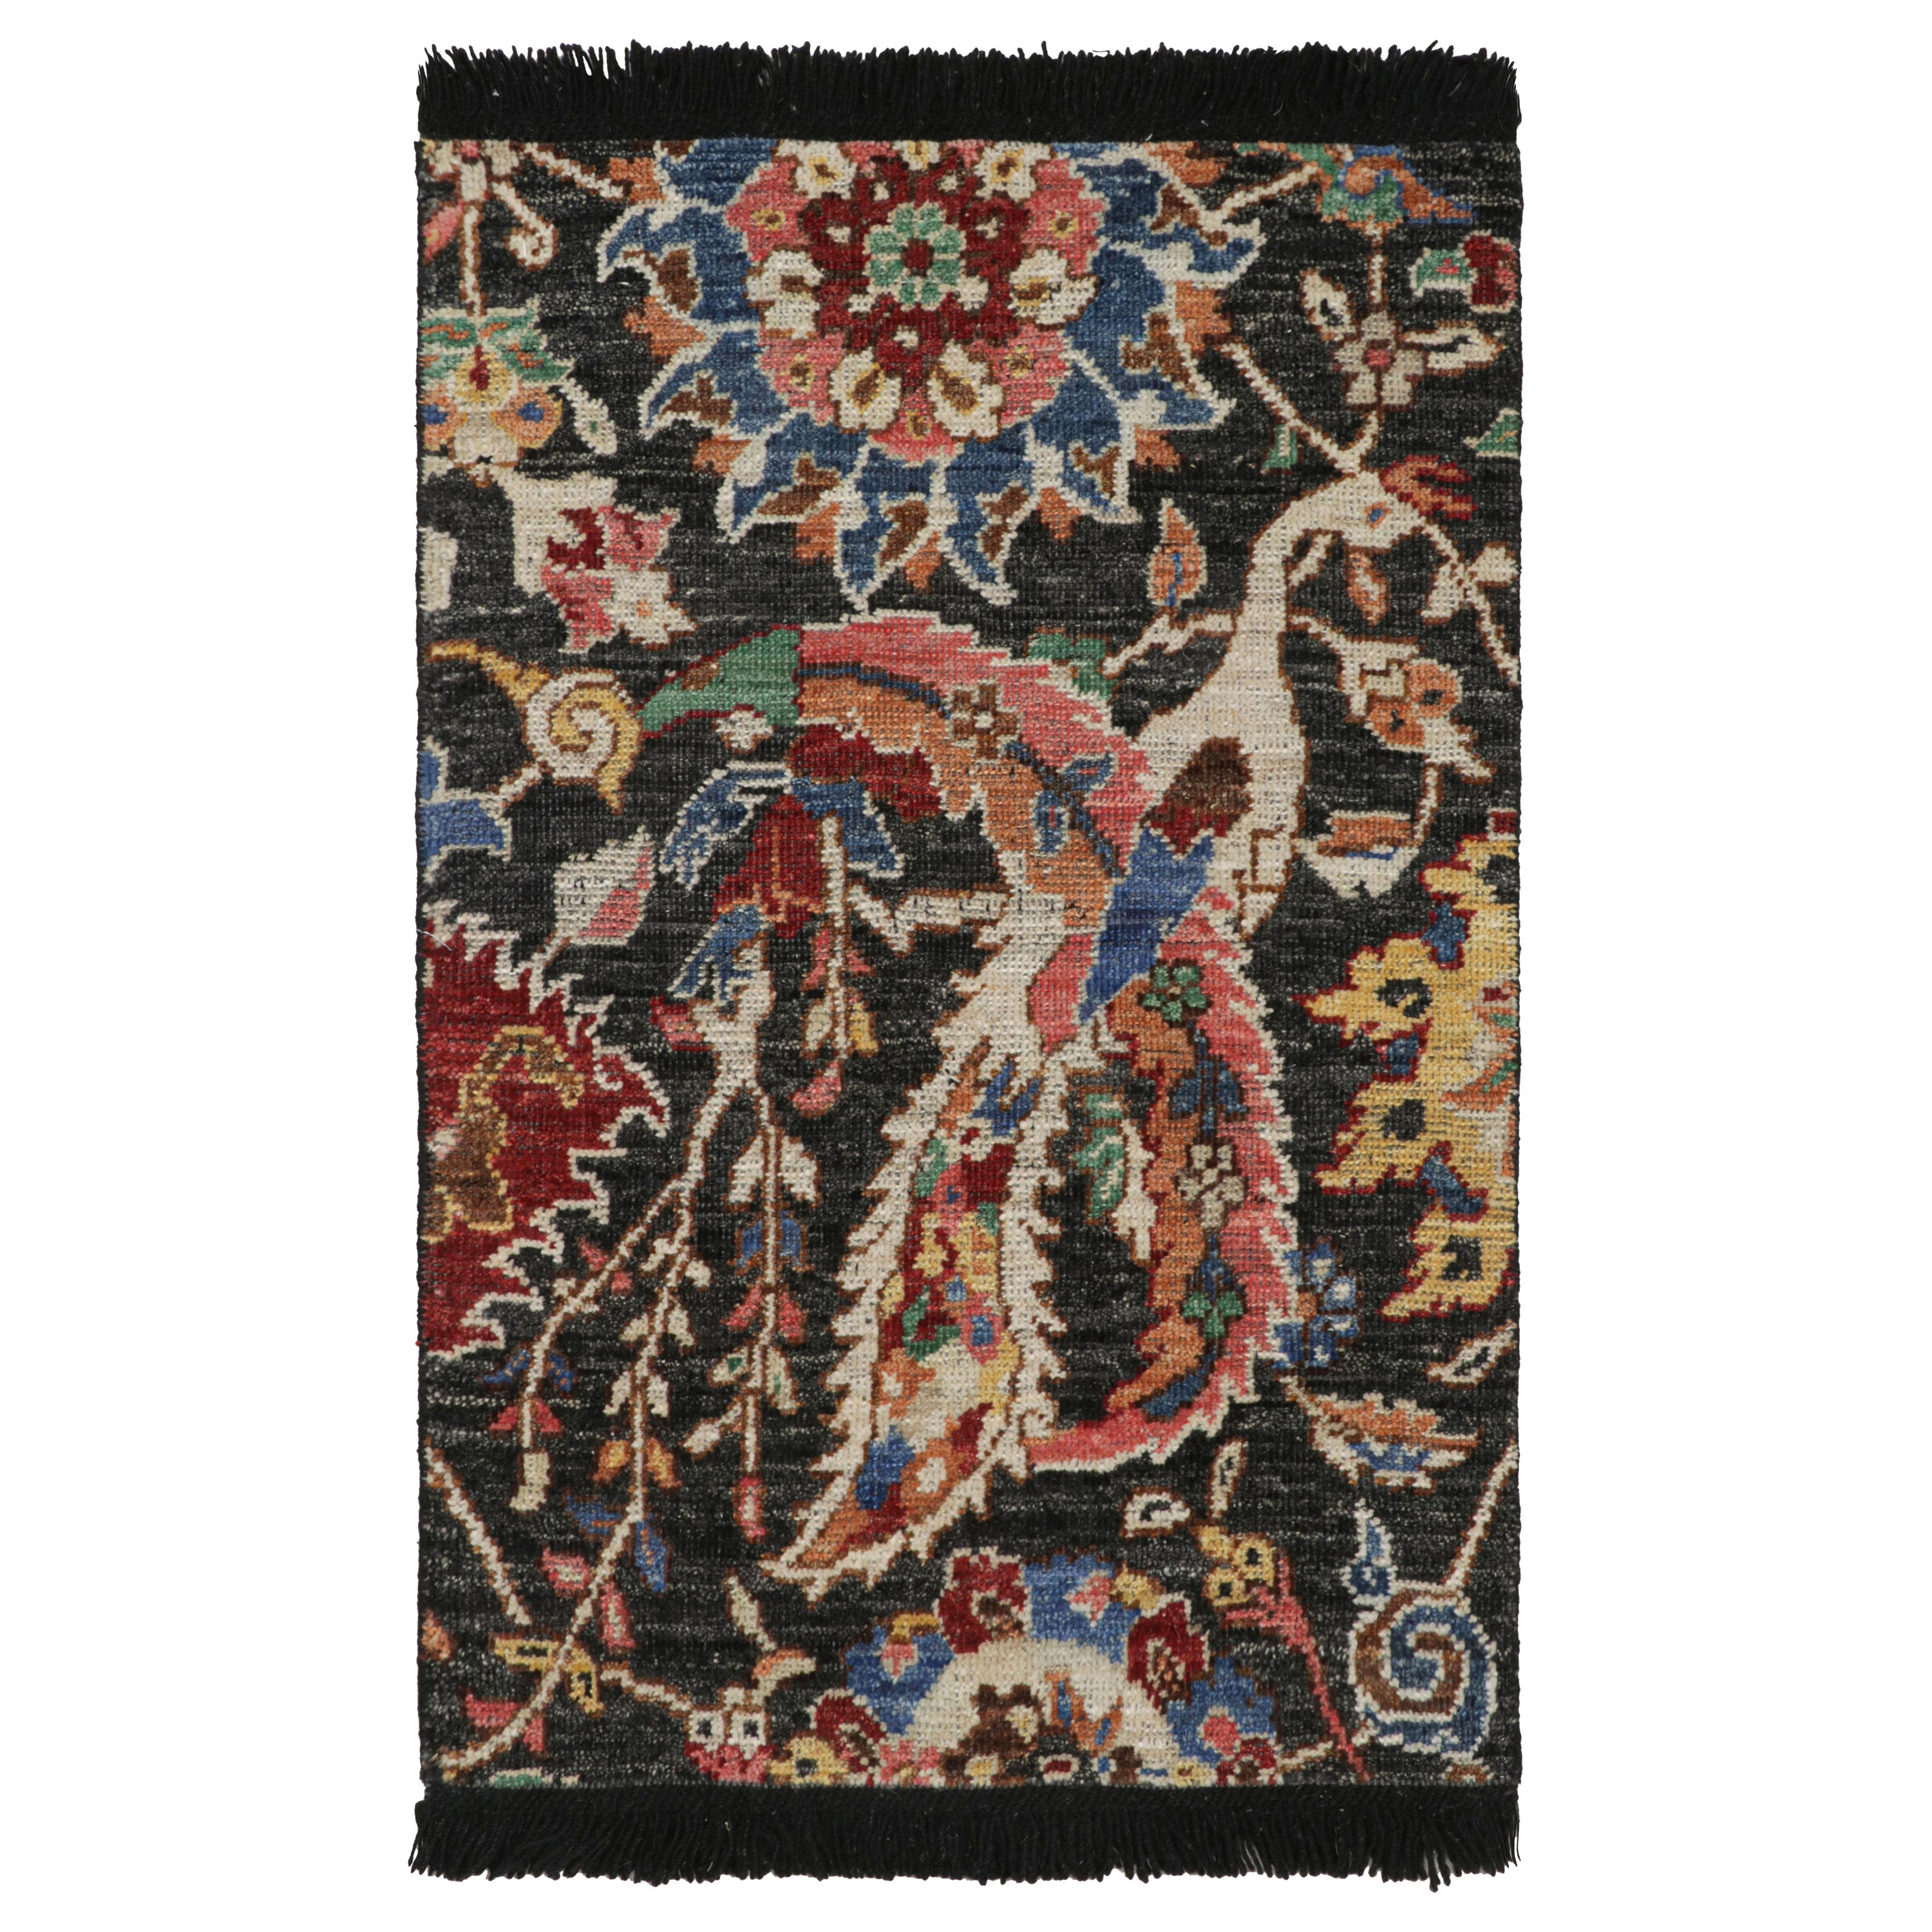 Rug & Kilim's Persian Kerman Style Rug in Black with Vibrant Floral Patterns (tapis persan de style Kerman en noir avec des motifs floraux vibrants) 